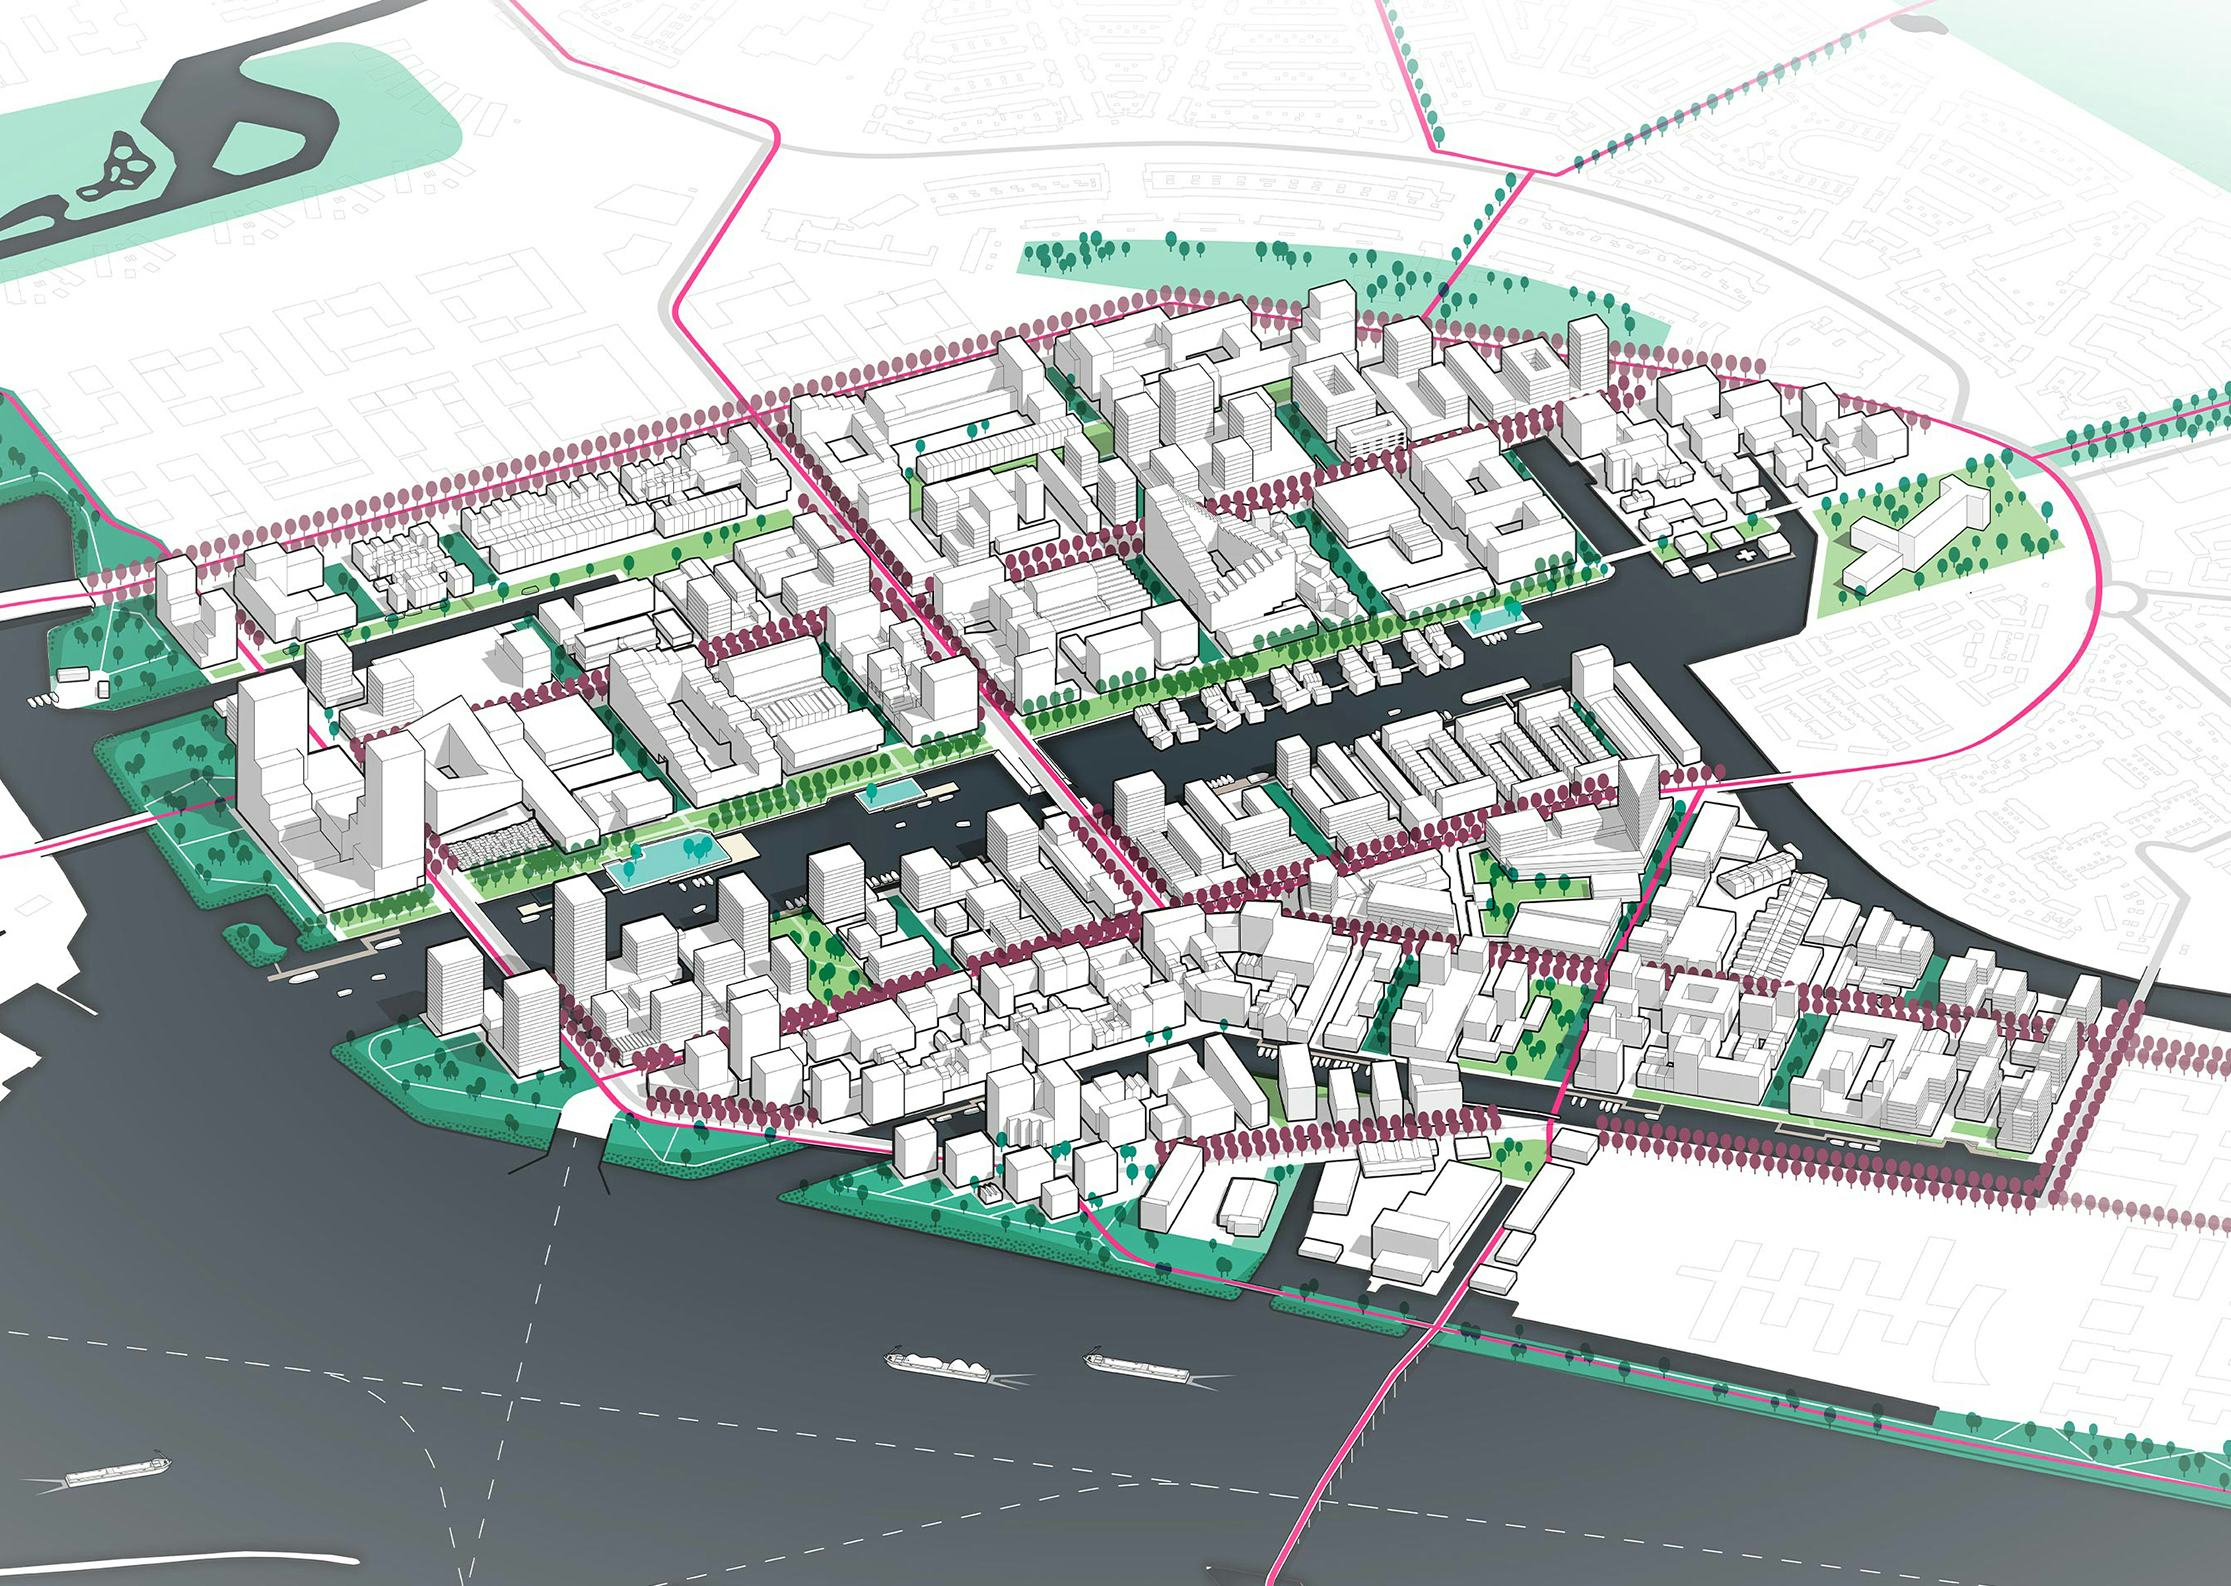 Doorkijk naar Buiksloterham in 2040 © DELVA landscape architecture / urbanism